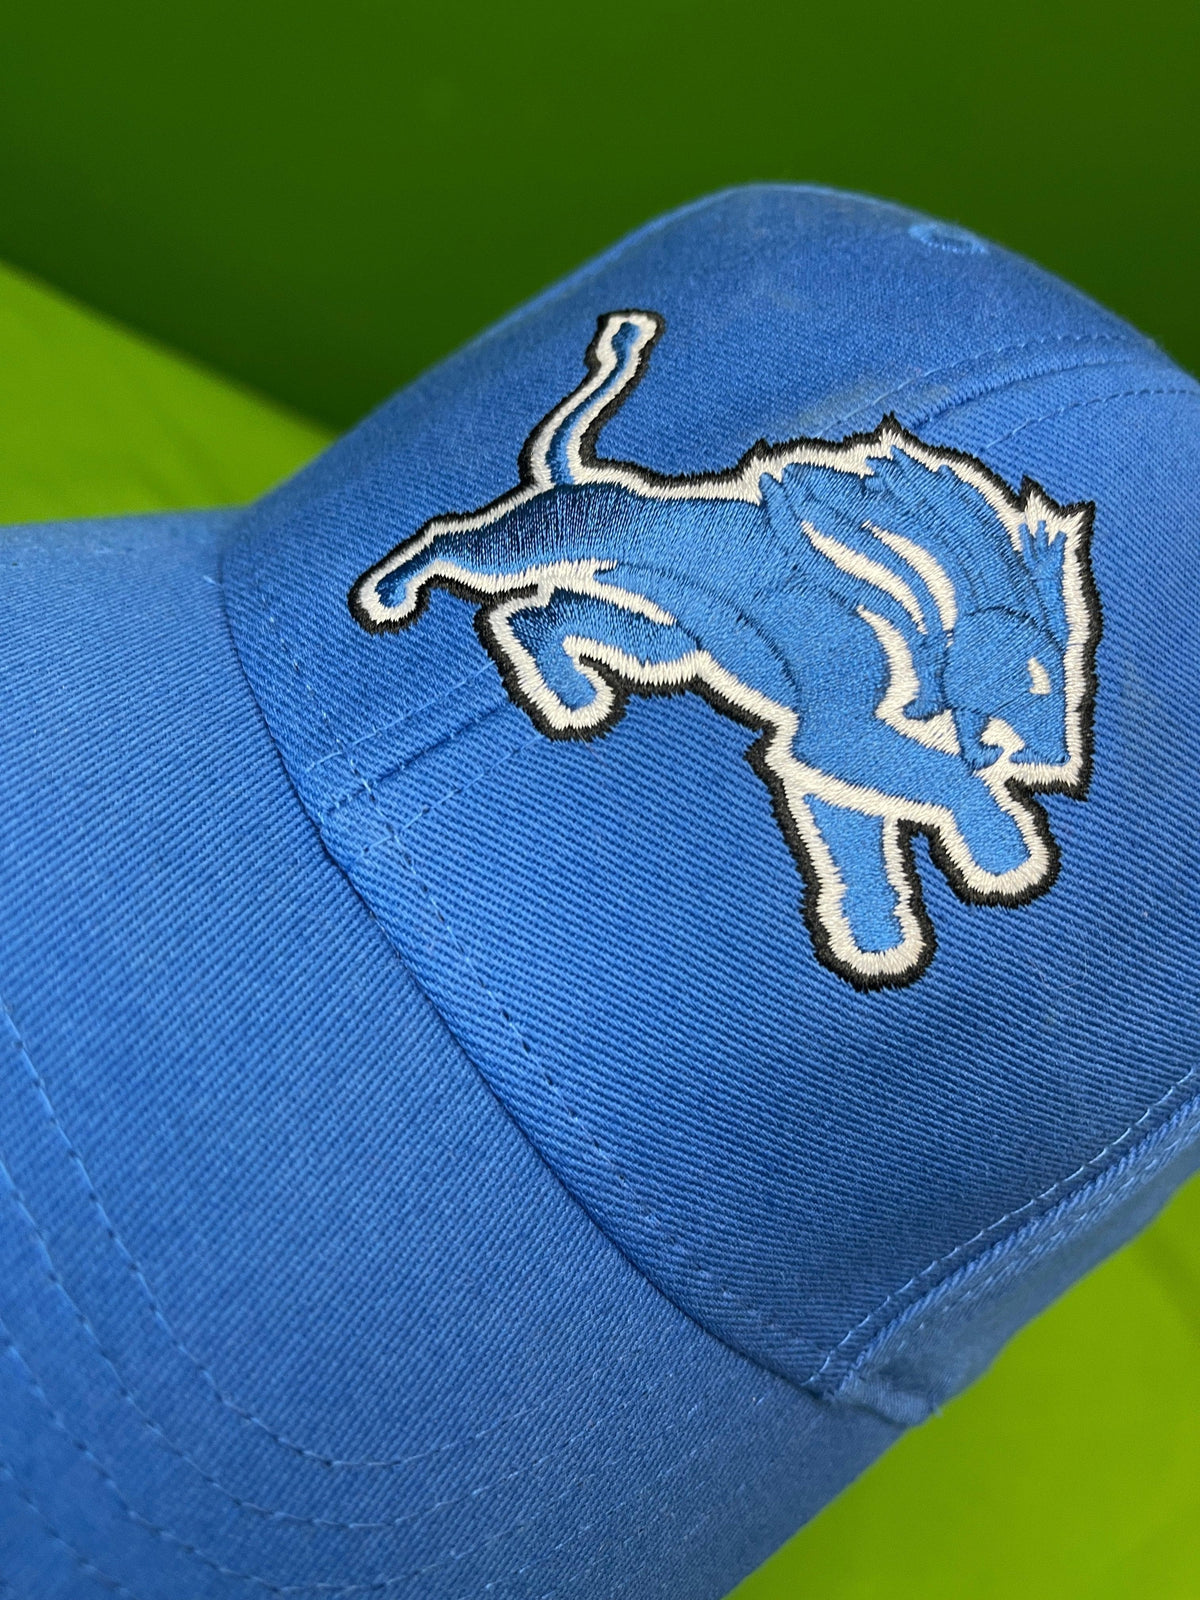 NFL Detroit Lions Blue Cotton Cap/Hat Youth OSFM Appx. 6-14